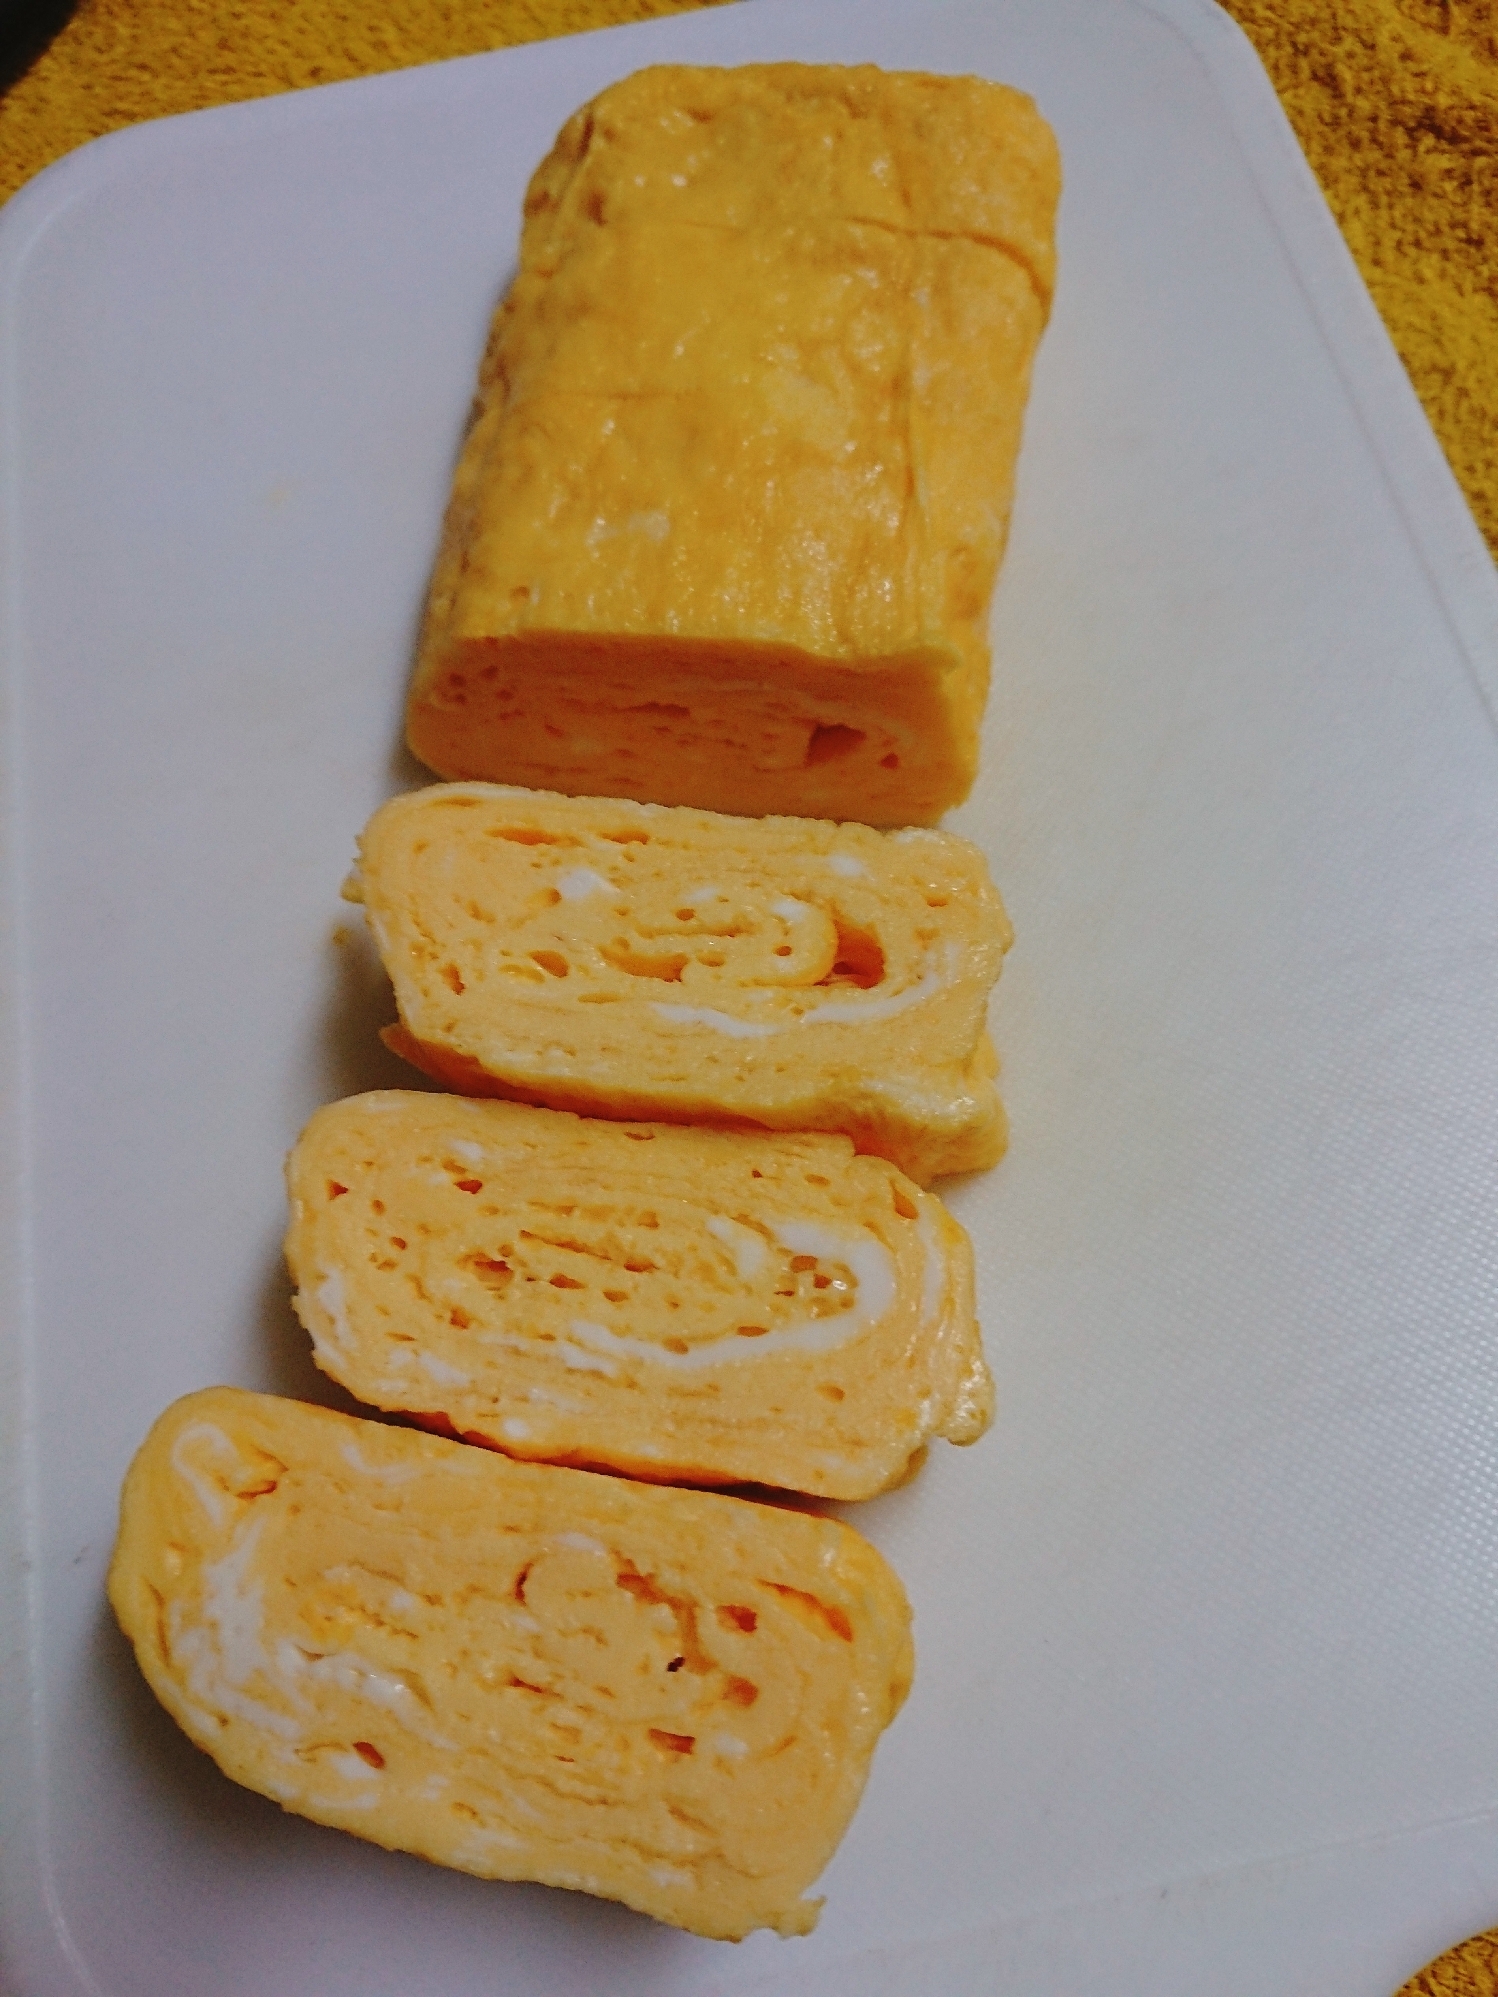 粉チーズ入りの玉子焼き